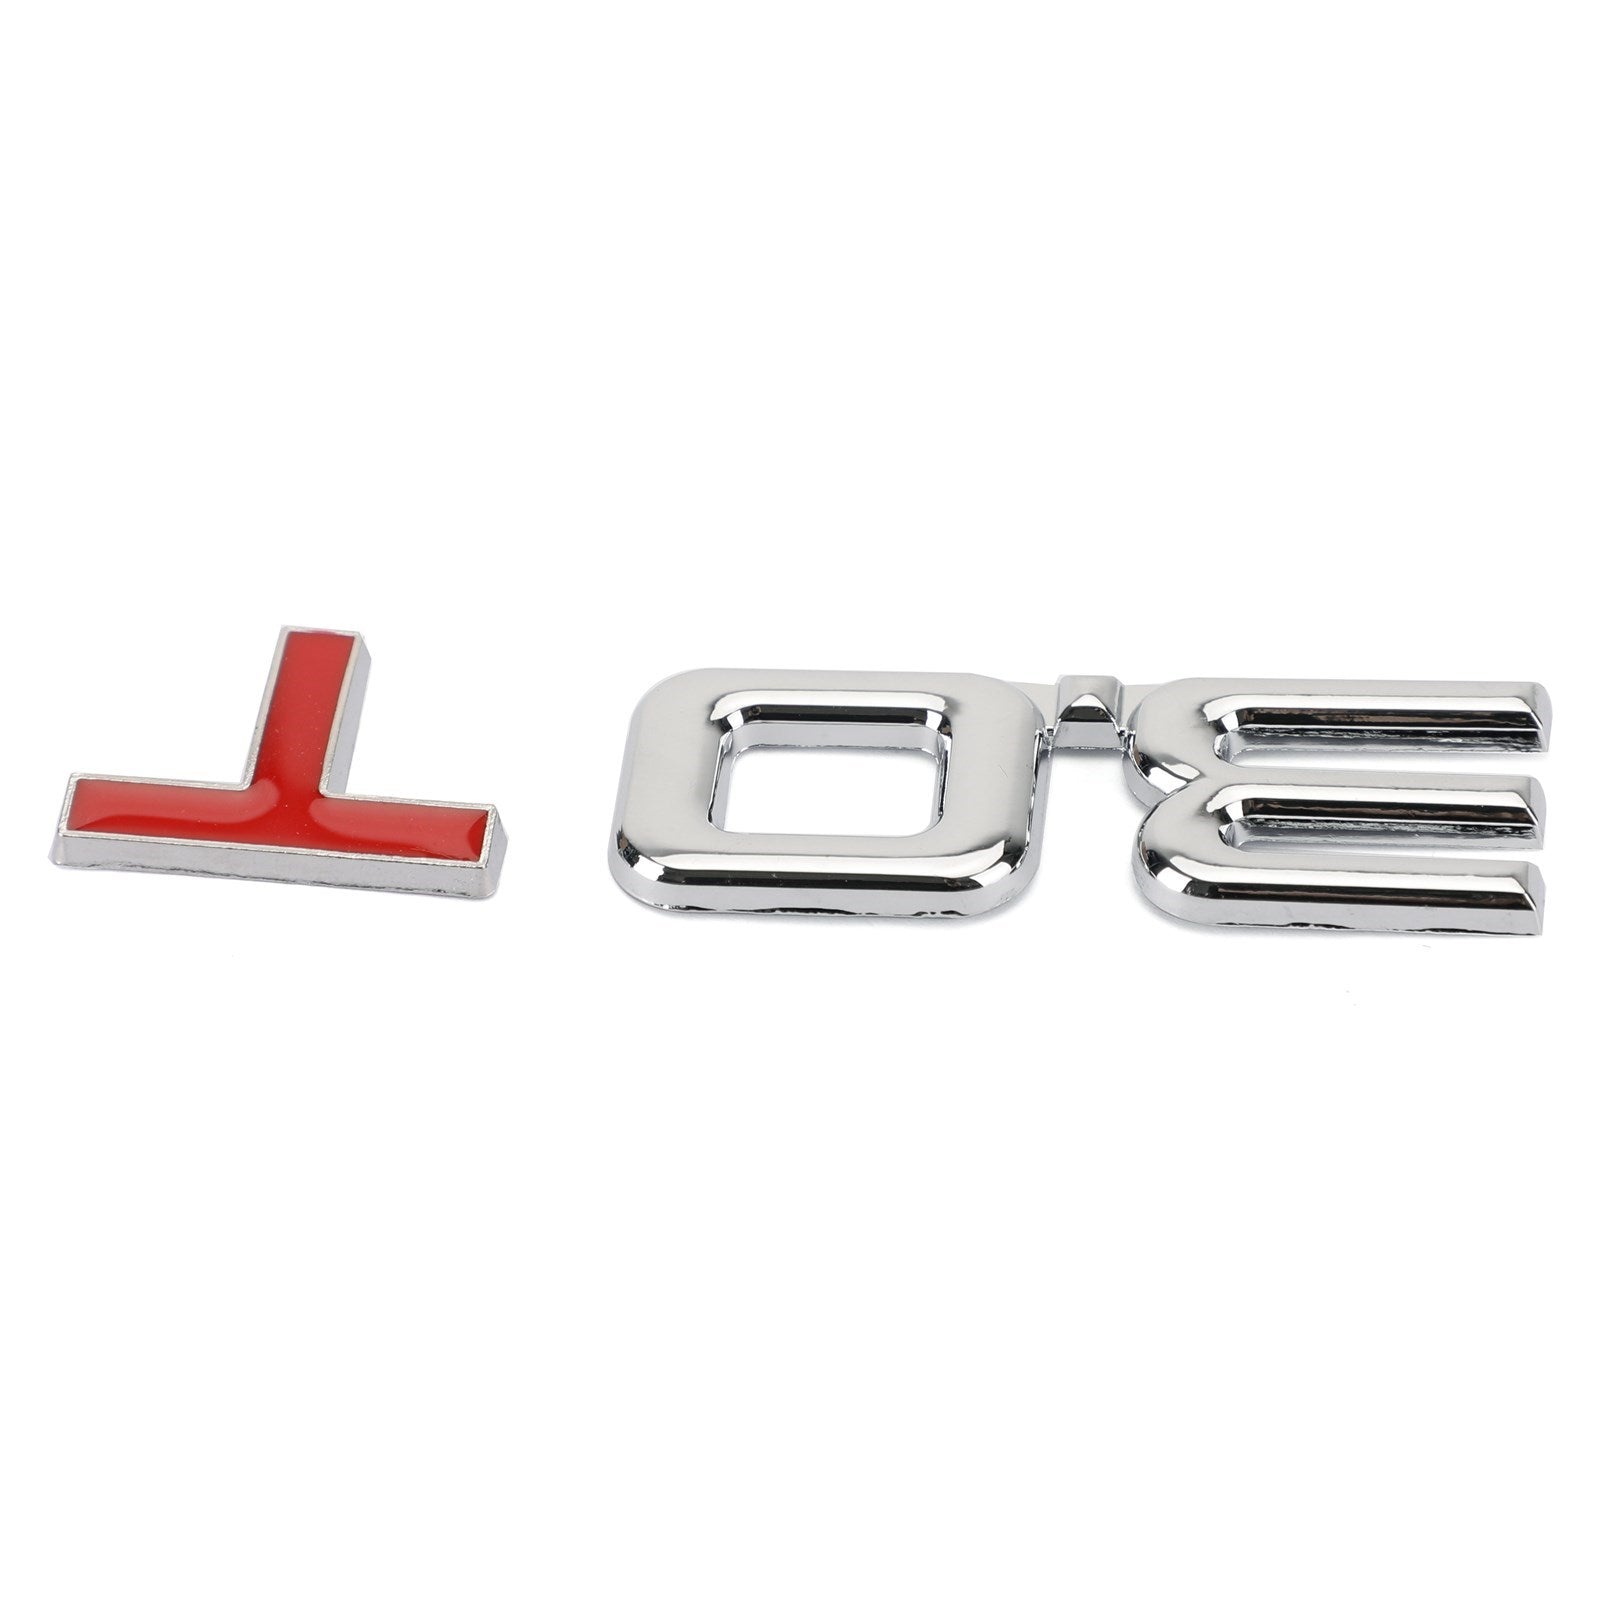 Autocollant d'insigne d'emblème en métal 3.0T 3D pour Audi A3 A4 A5 A6 A7 B6 B7 B8 Q3 Q5 Q7 TT générique